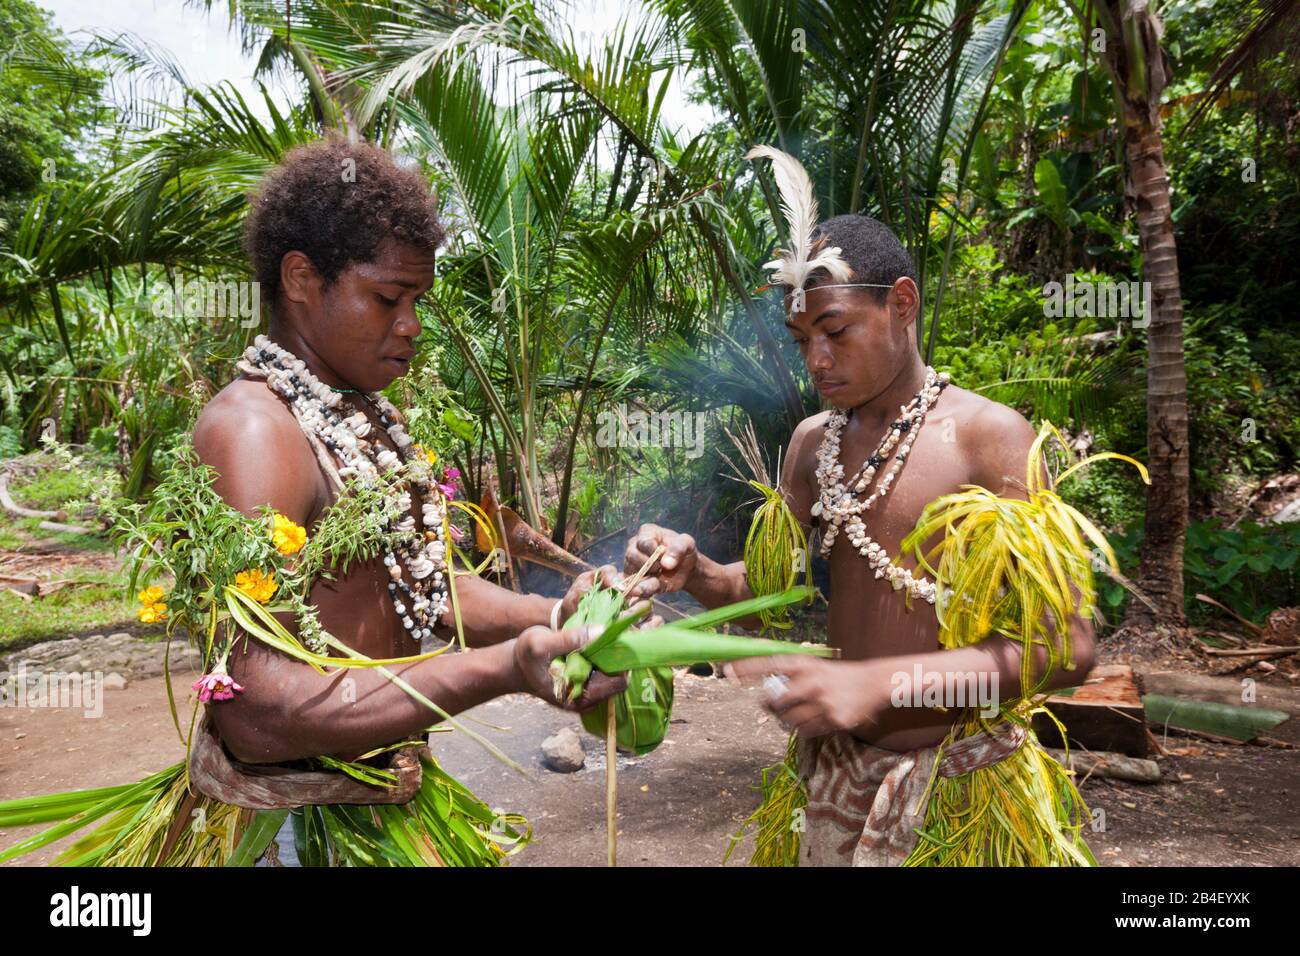 Démonstration de faire de sagou, Tufi, province de Oro, la Papouasie-Nouvelle-Guinée Banque D'Images